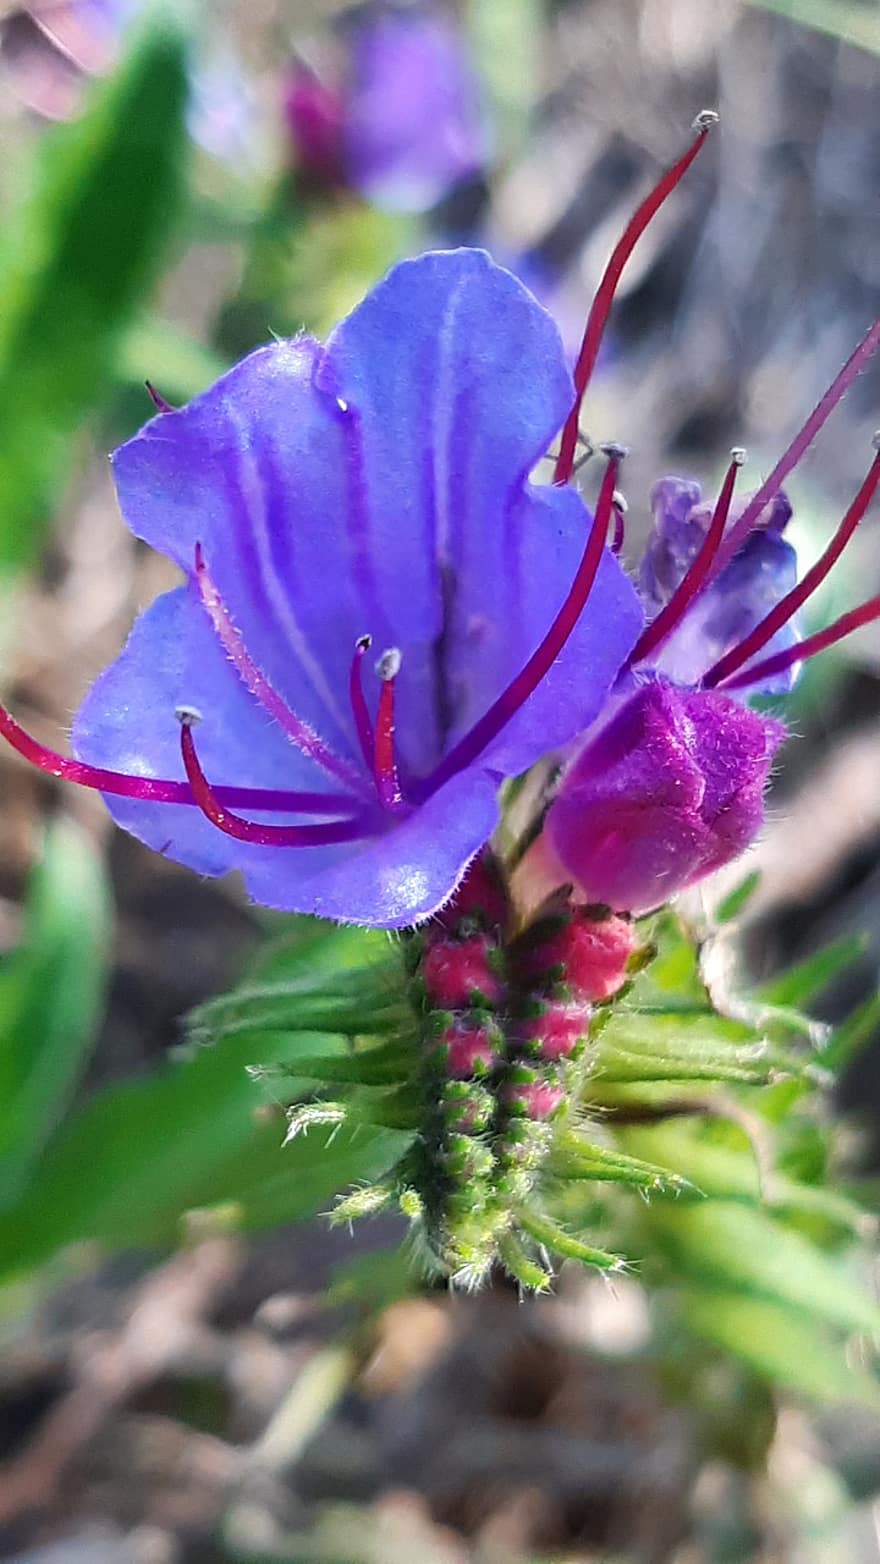 viper bugloss, bông hoa, cây, chồi non, echium vulgare, blueweed, cây kế xanh, Hoa màu xanh, hoa, hoa dại, Thiên nhiên